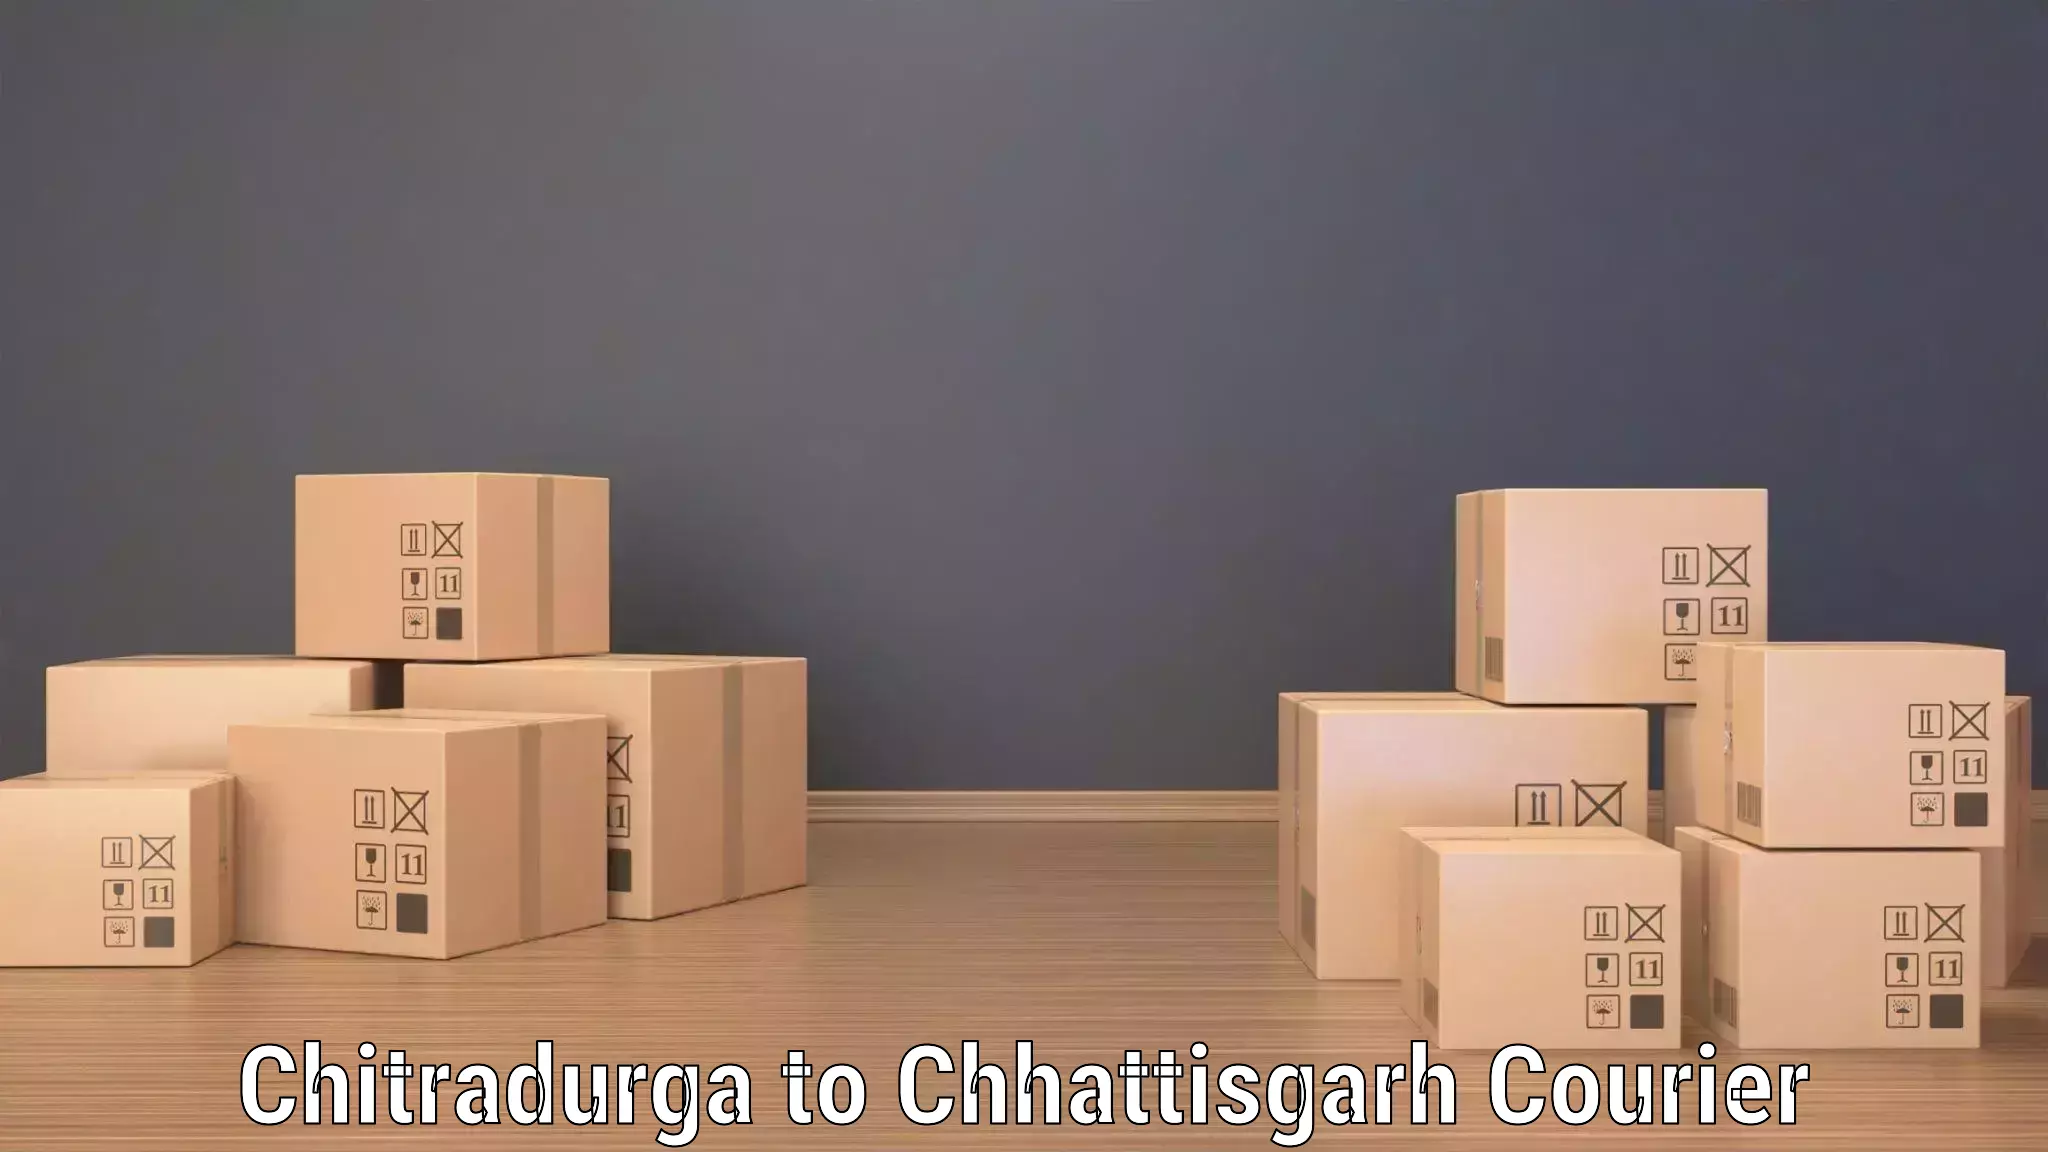 Fast delivery service Chitradurga to Bijapur Chhattisgarh